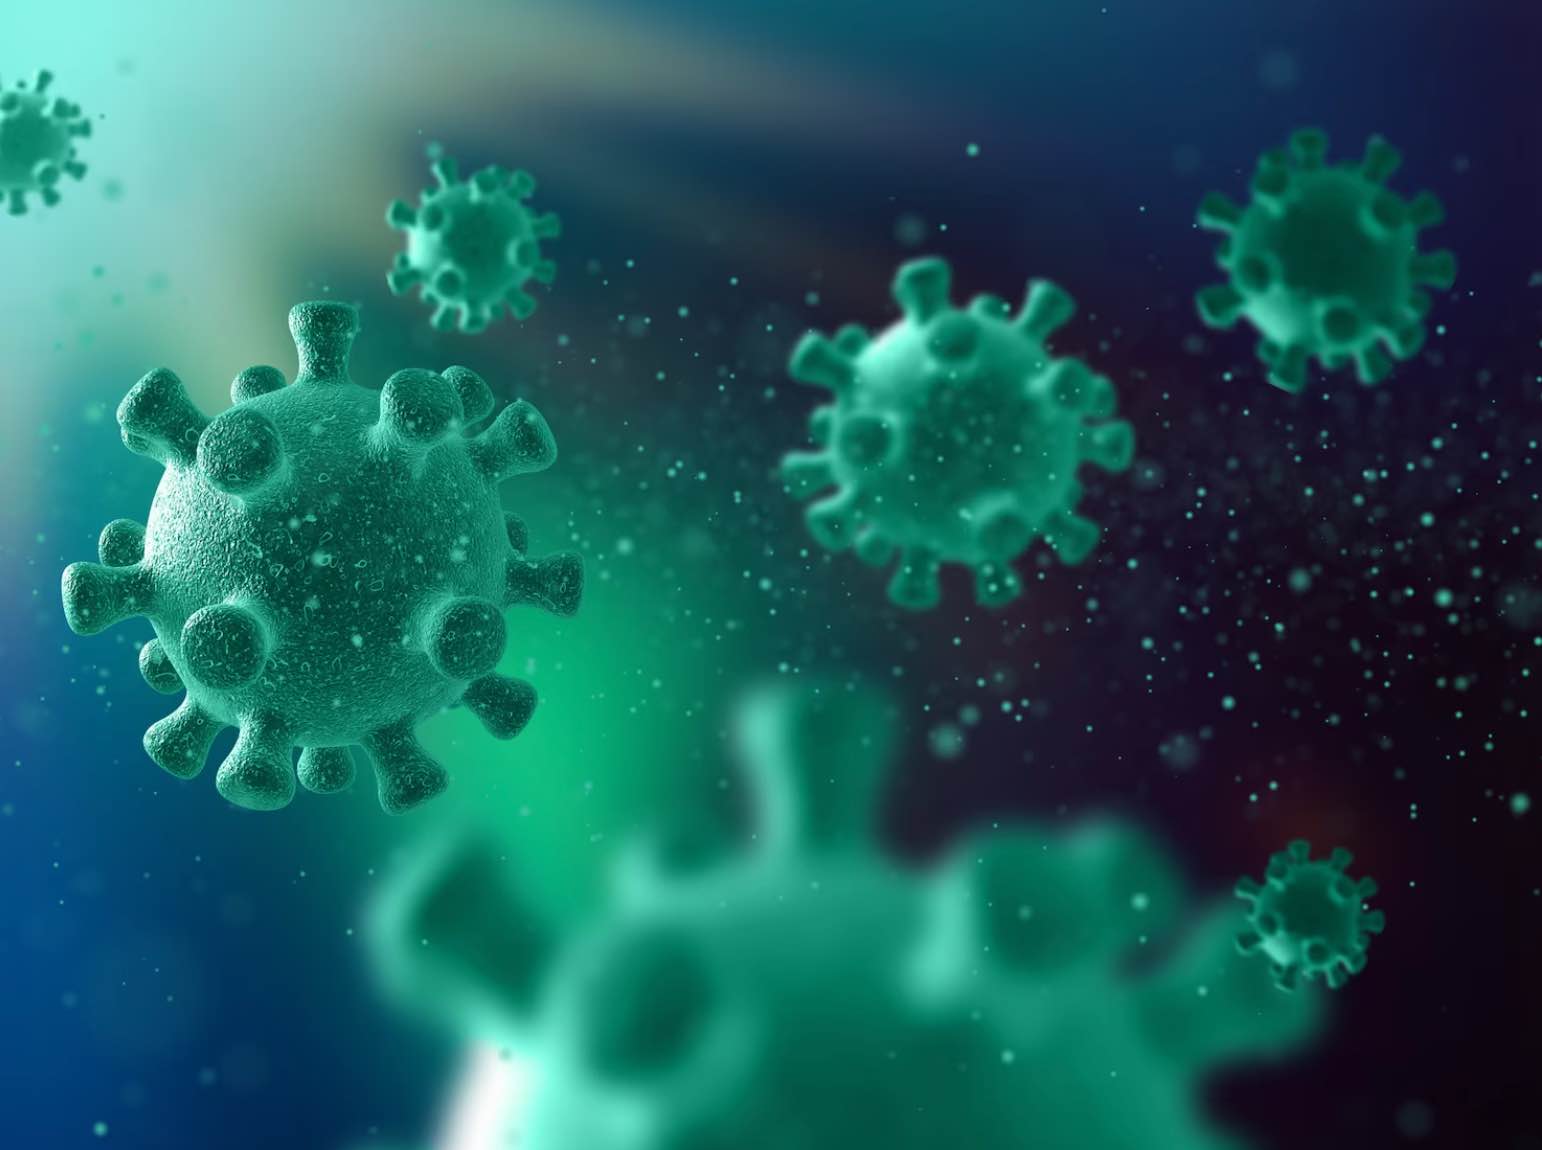 Как укрепить иммунитет